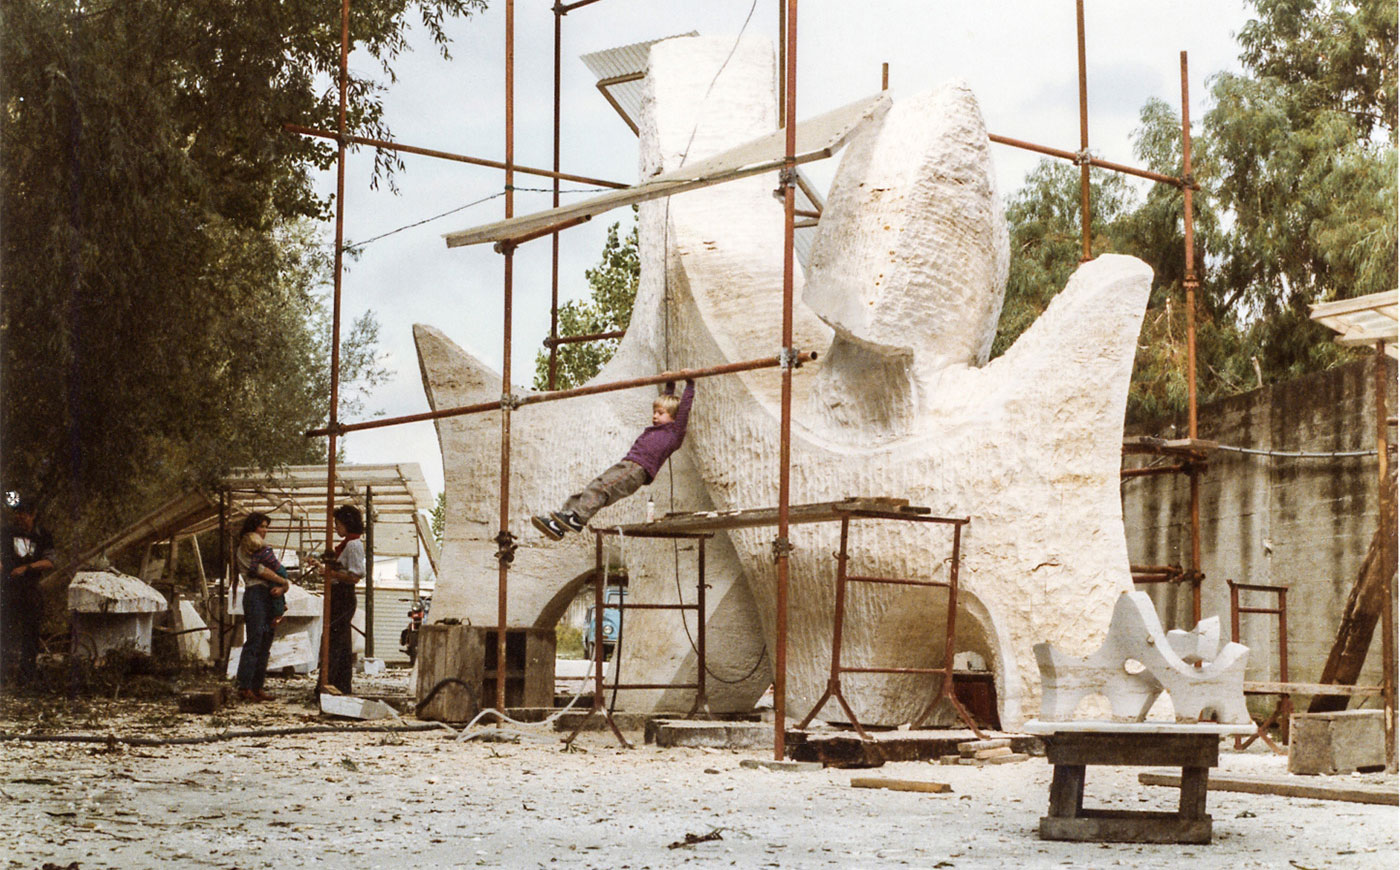 Richard Erdman modern sculpture process